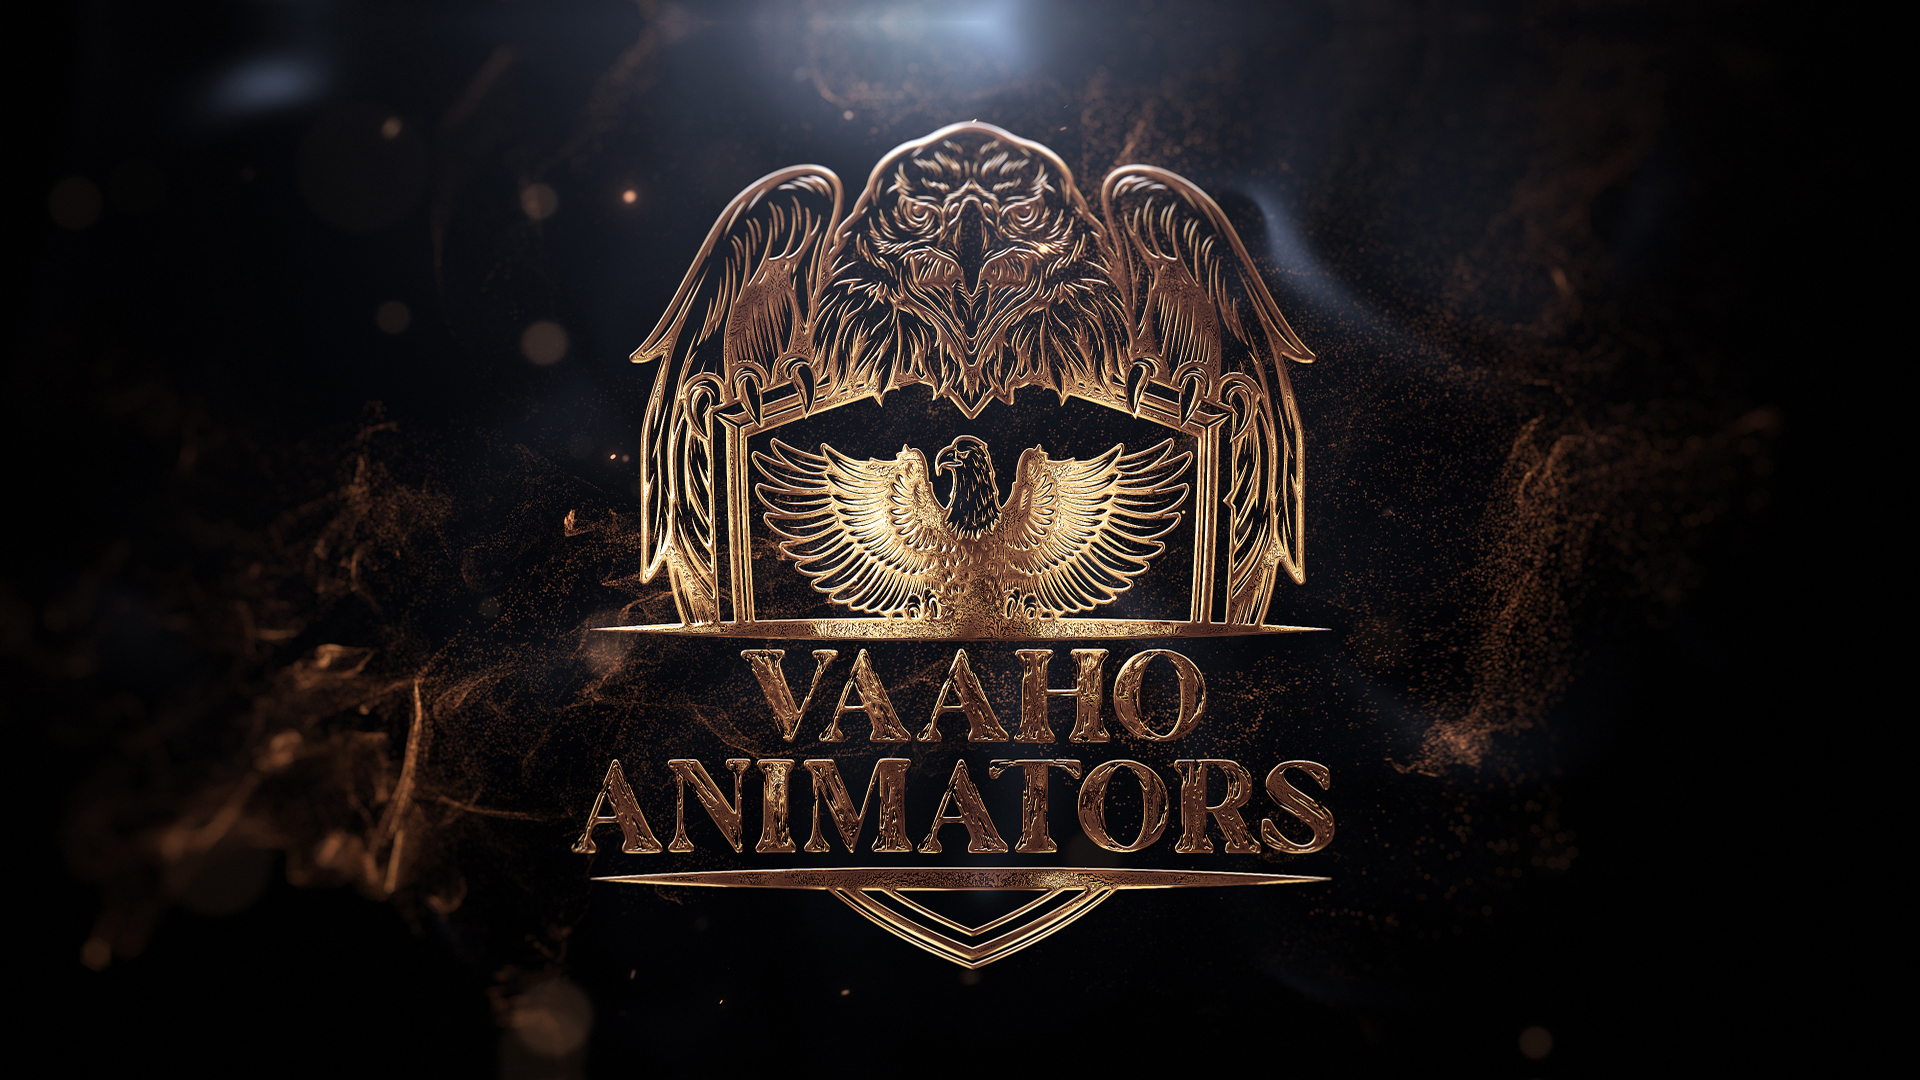 Vaaho Animators